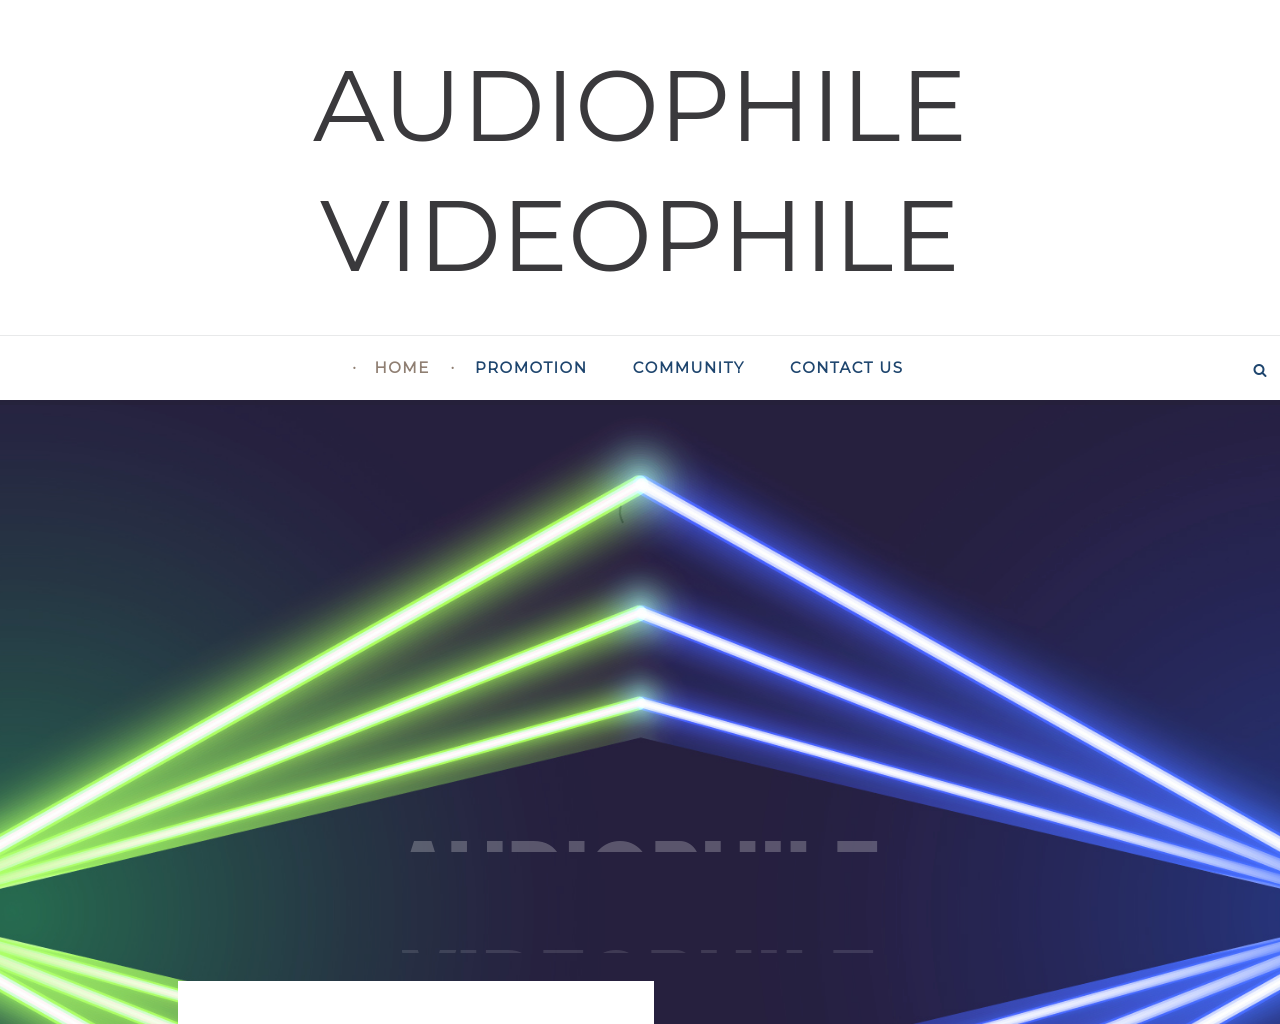 audiophile-videophile.com